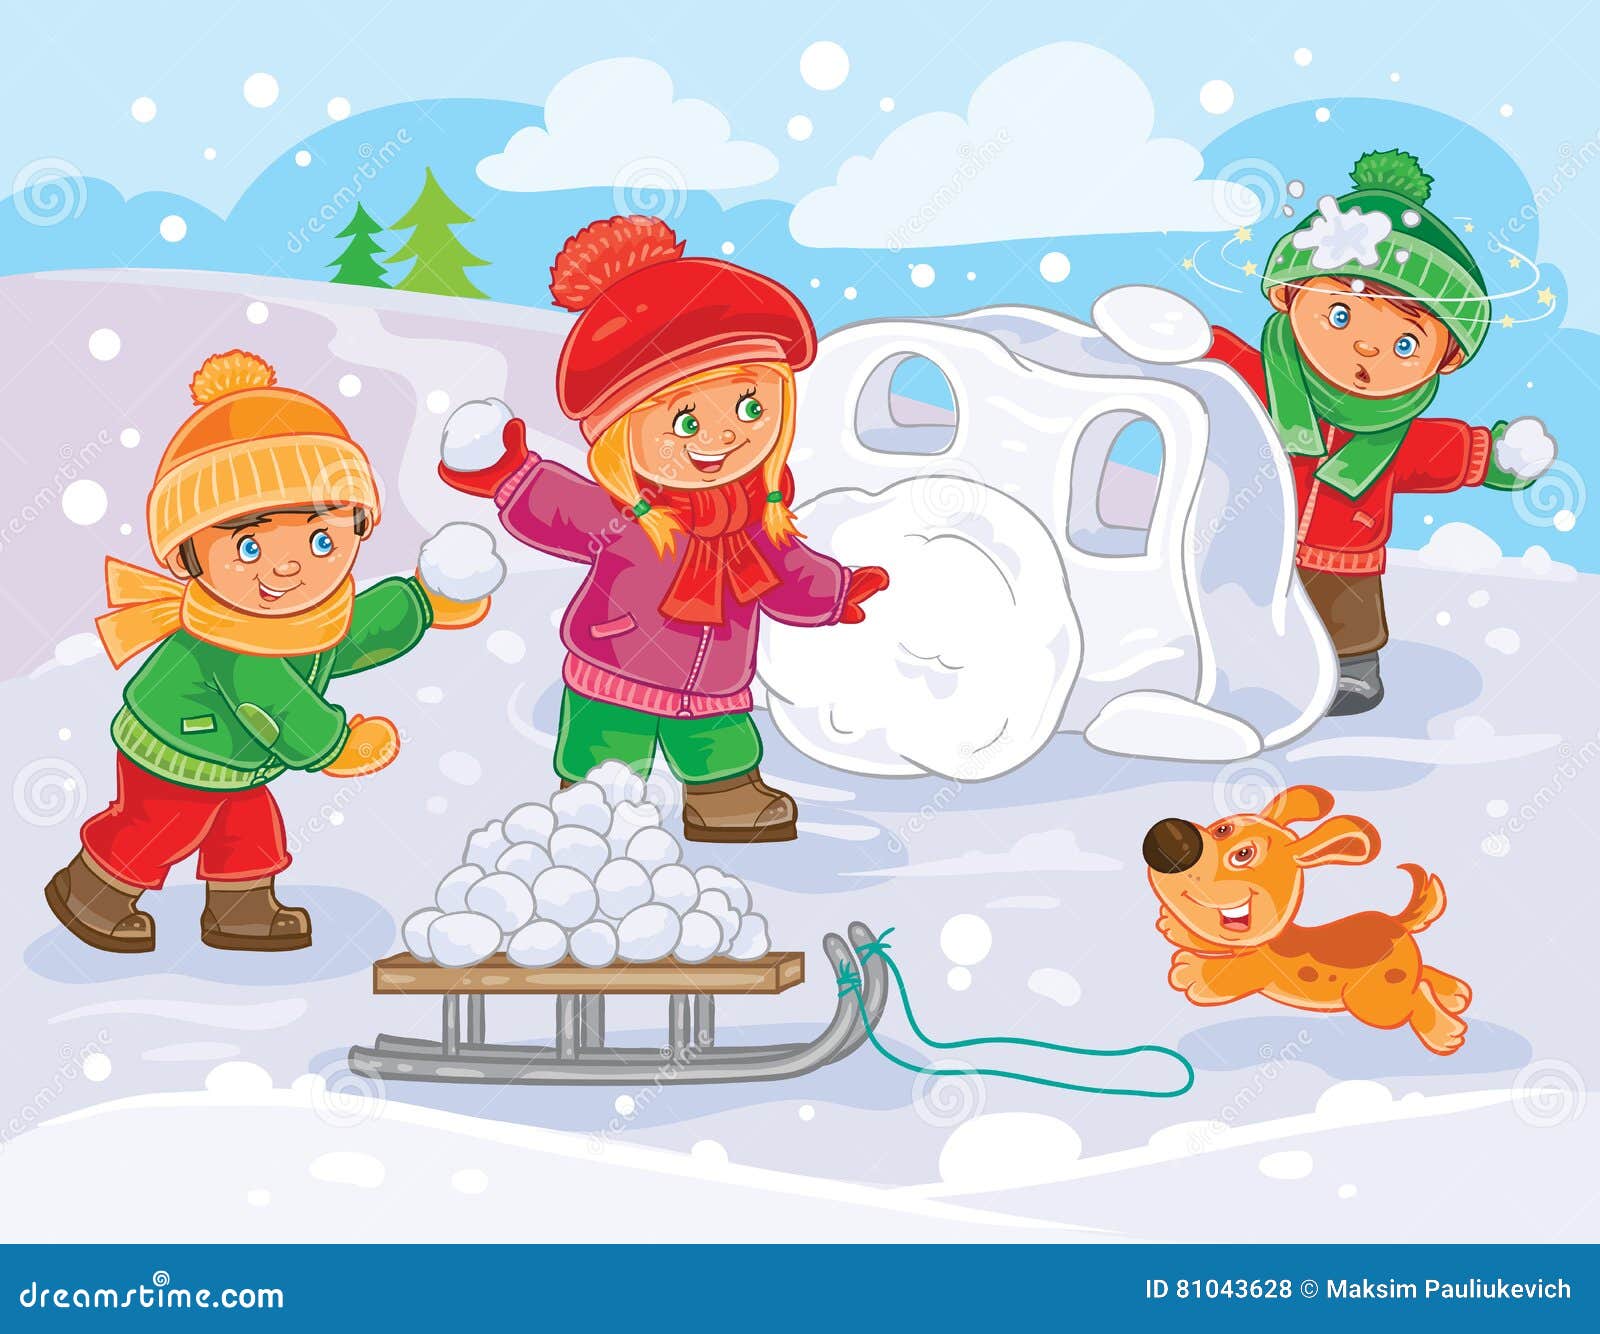 Другие вили строили лепили. Игра в снежки. Дети играют в снежки. Сюжетная картина зимние развлечения. Зимние развлечения для детей в детском саду.